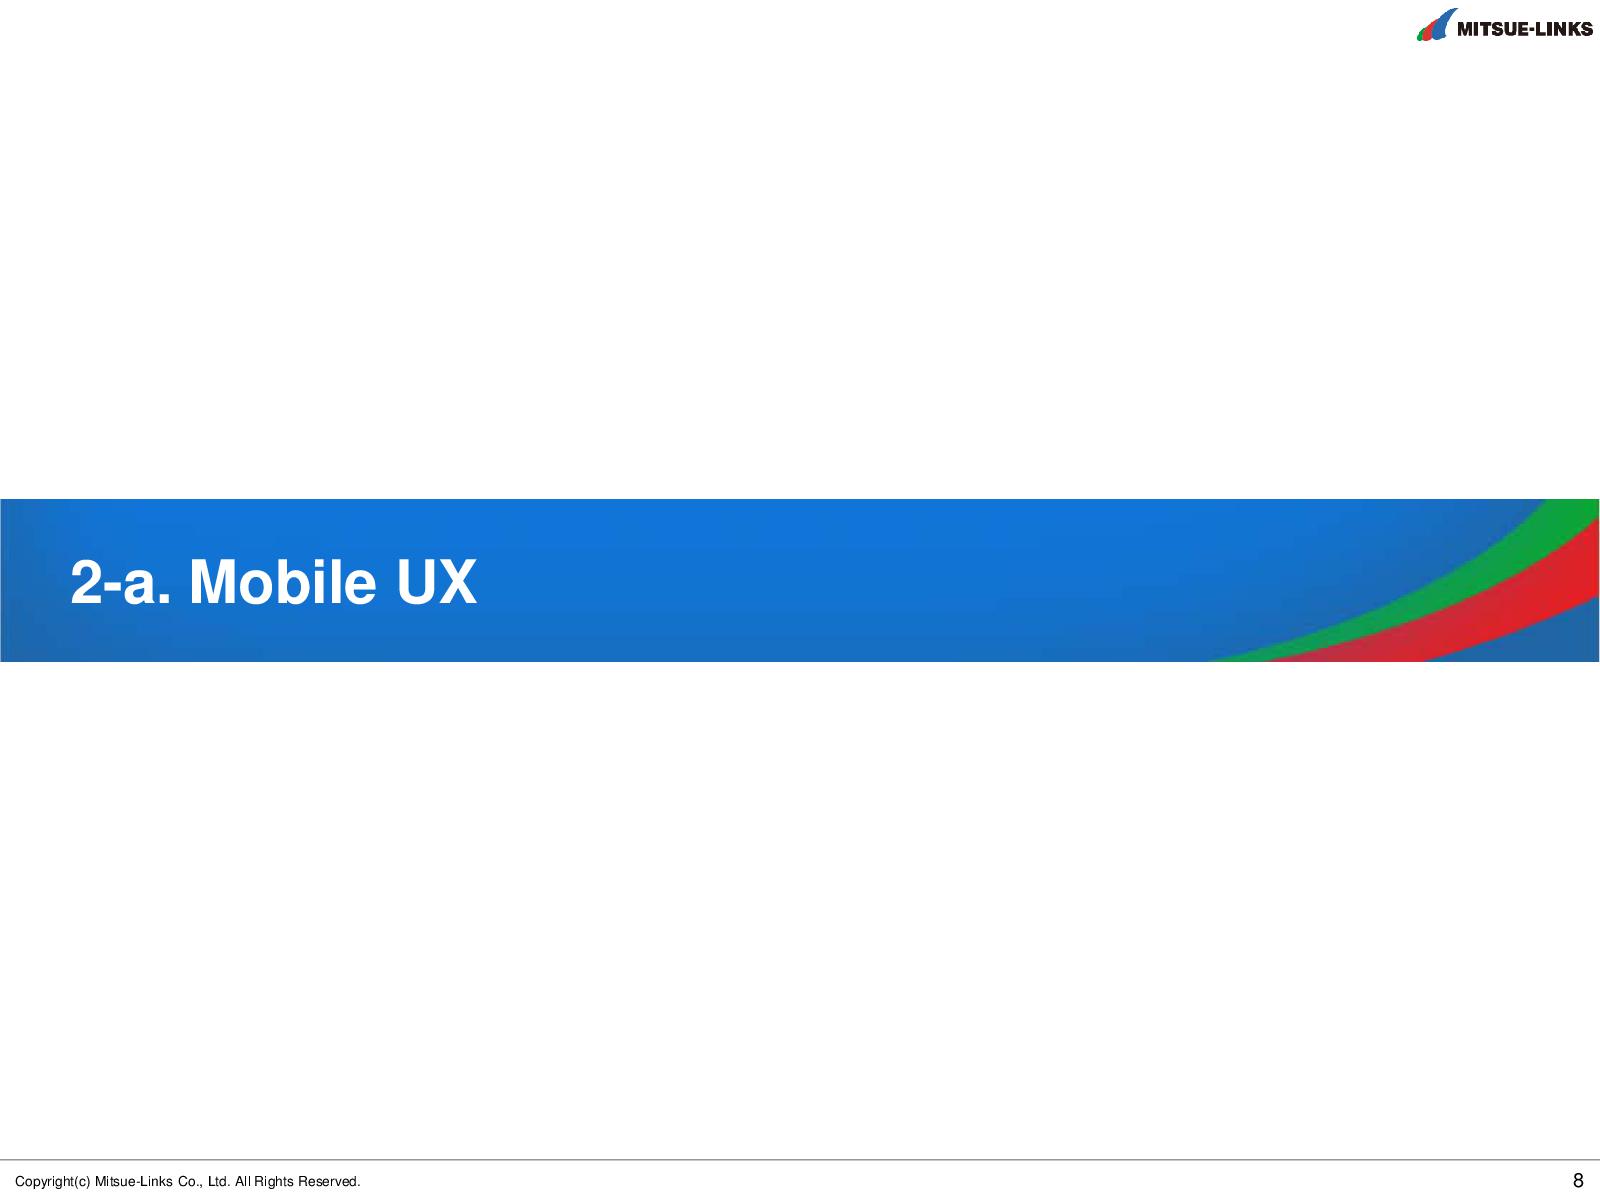 Файл:Тренды мобильного UX в Японии (Тойохиро Канаяма, UXRussia-2011).pdf